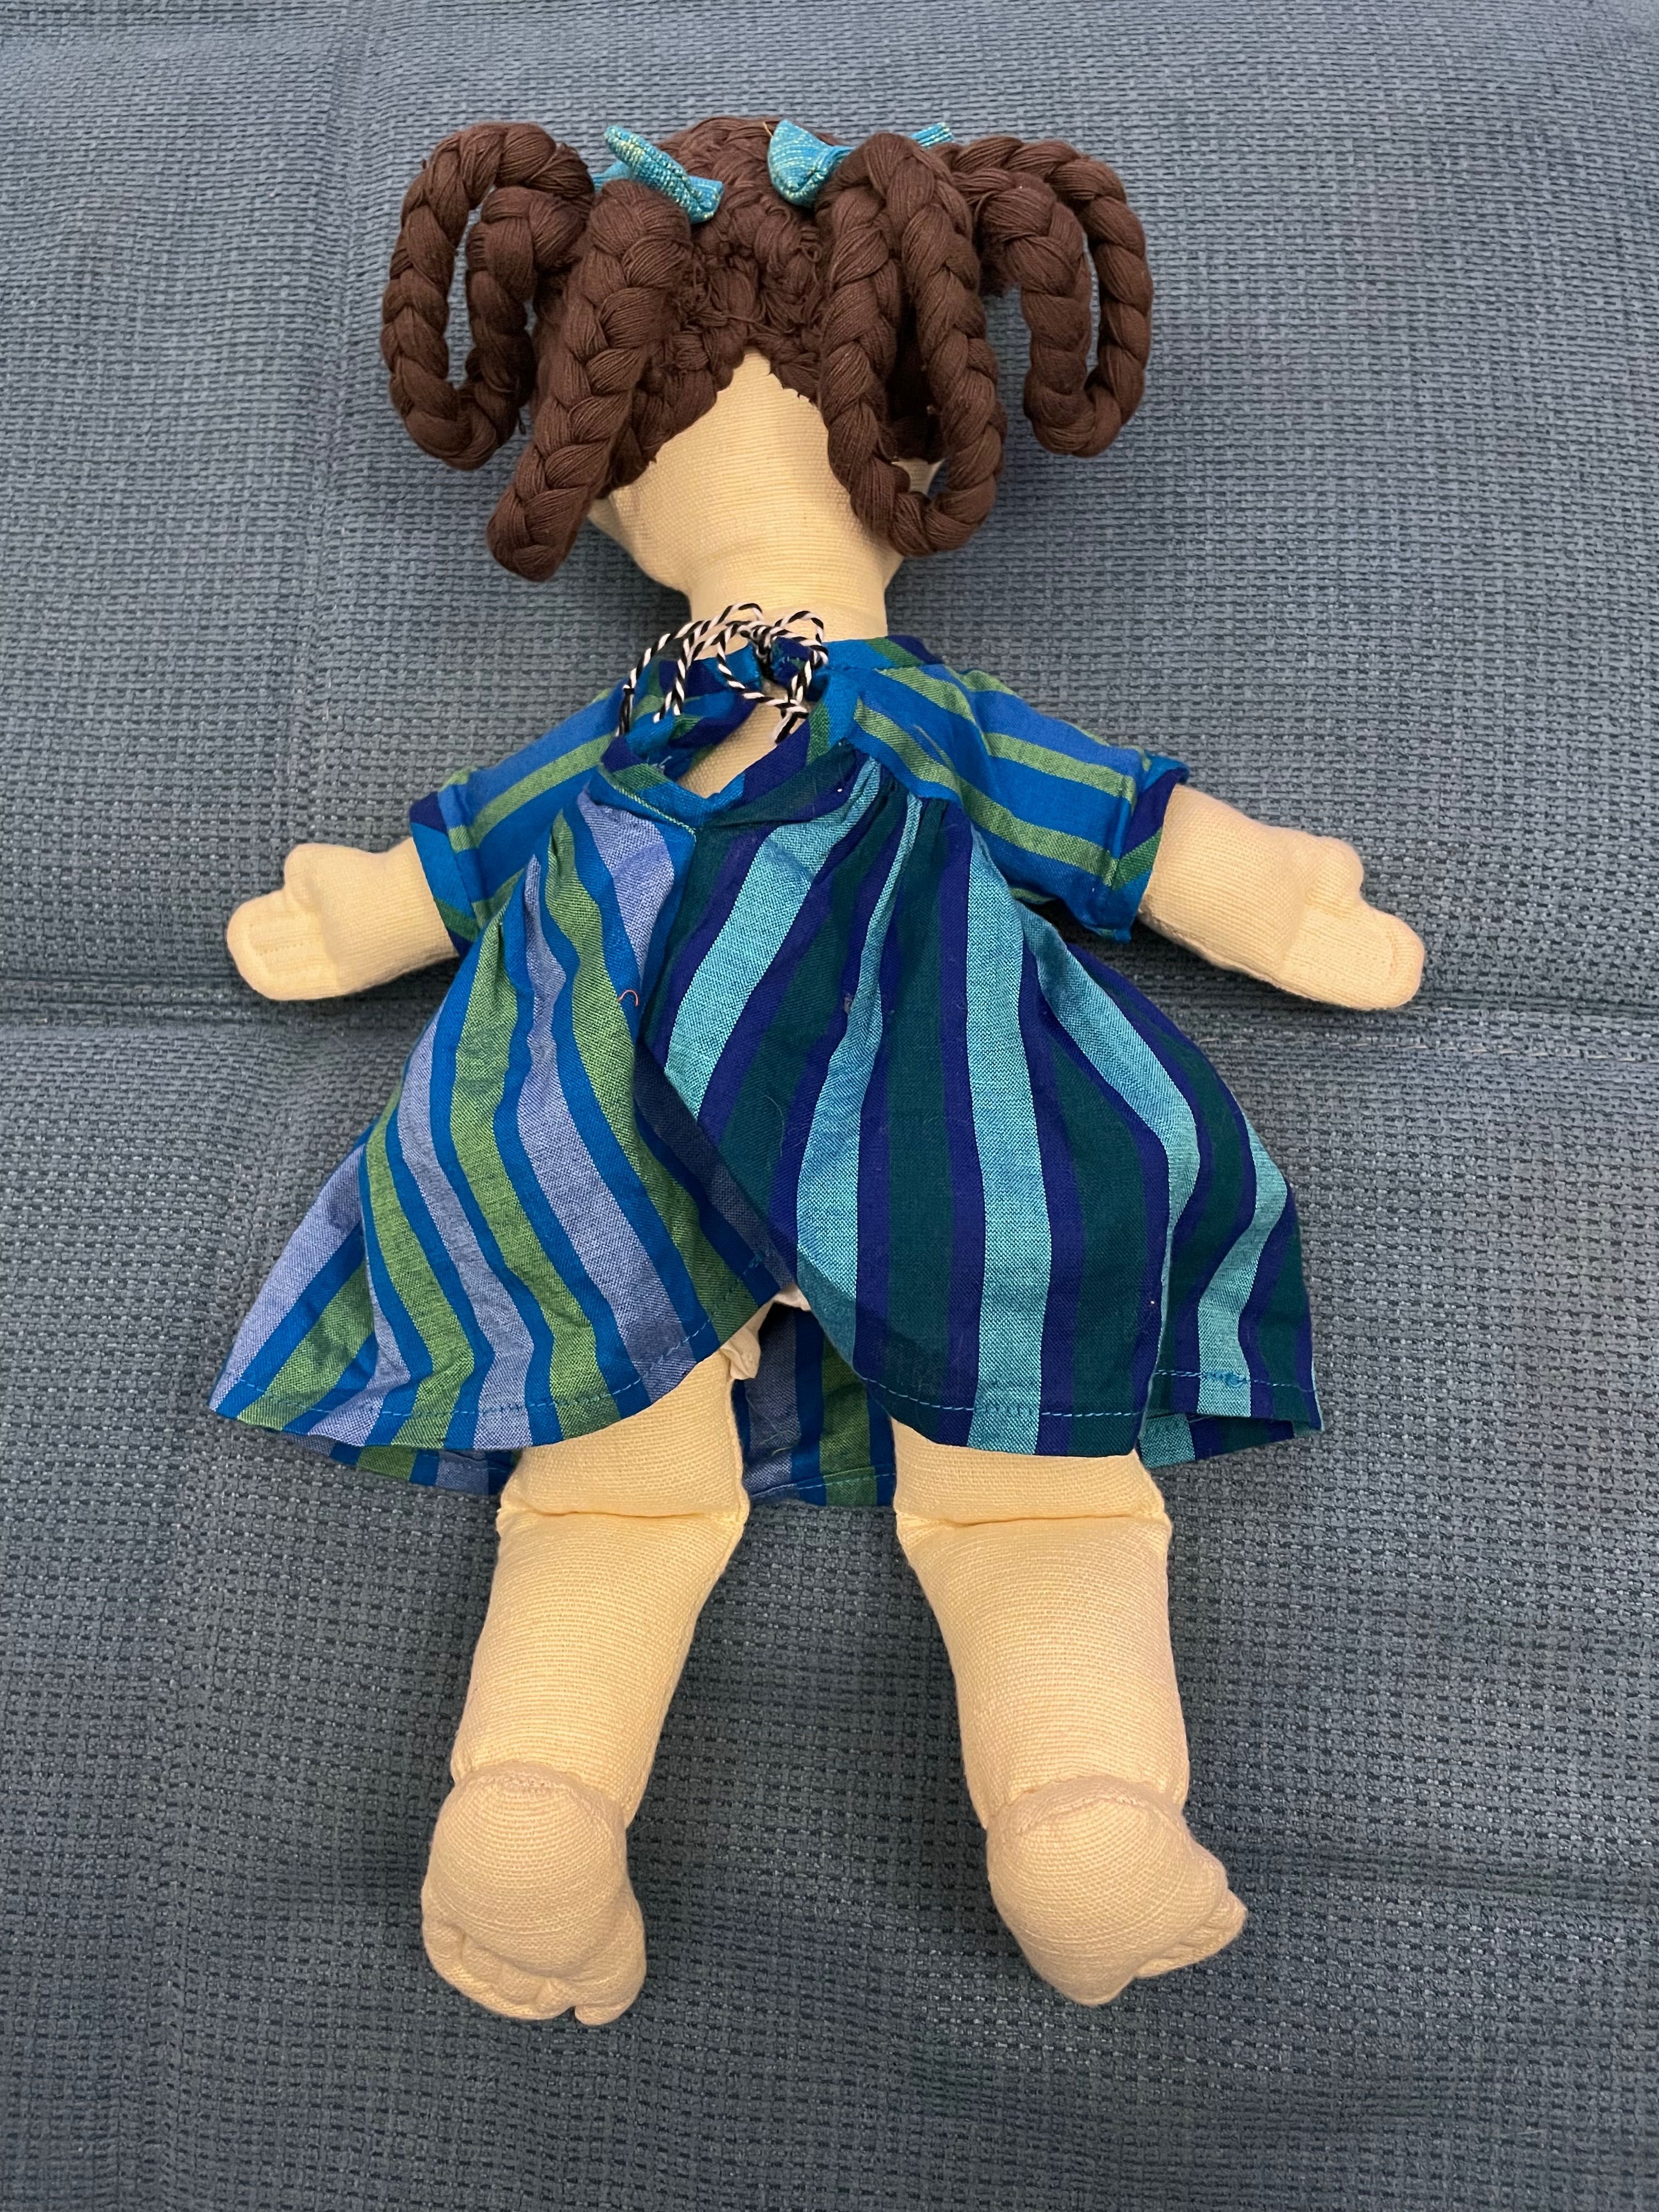 Детска кукла Шарлот от колекцията “Боси крачета” на Барбара Сансони